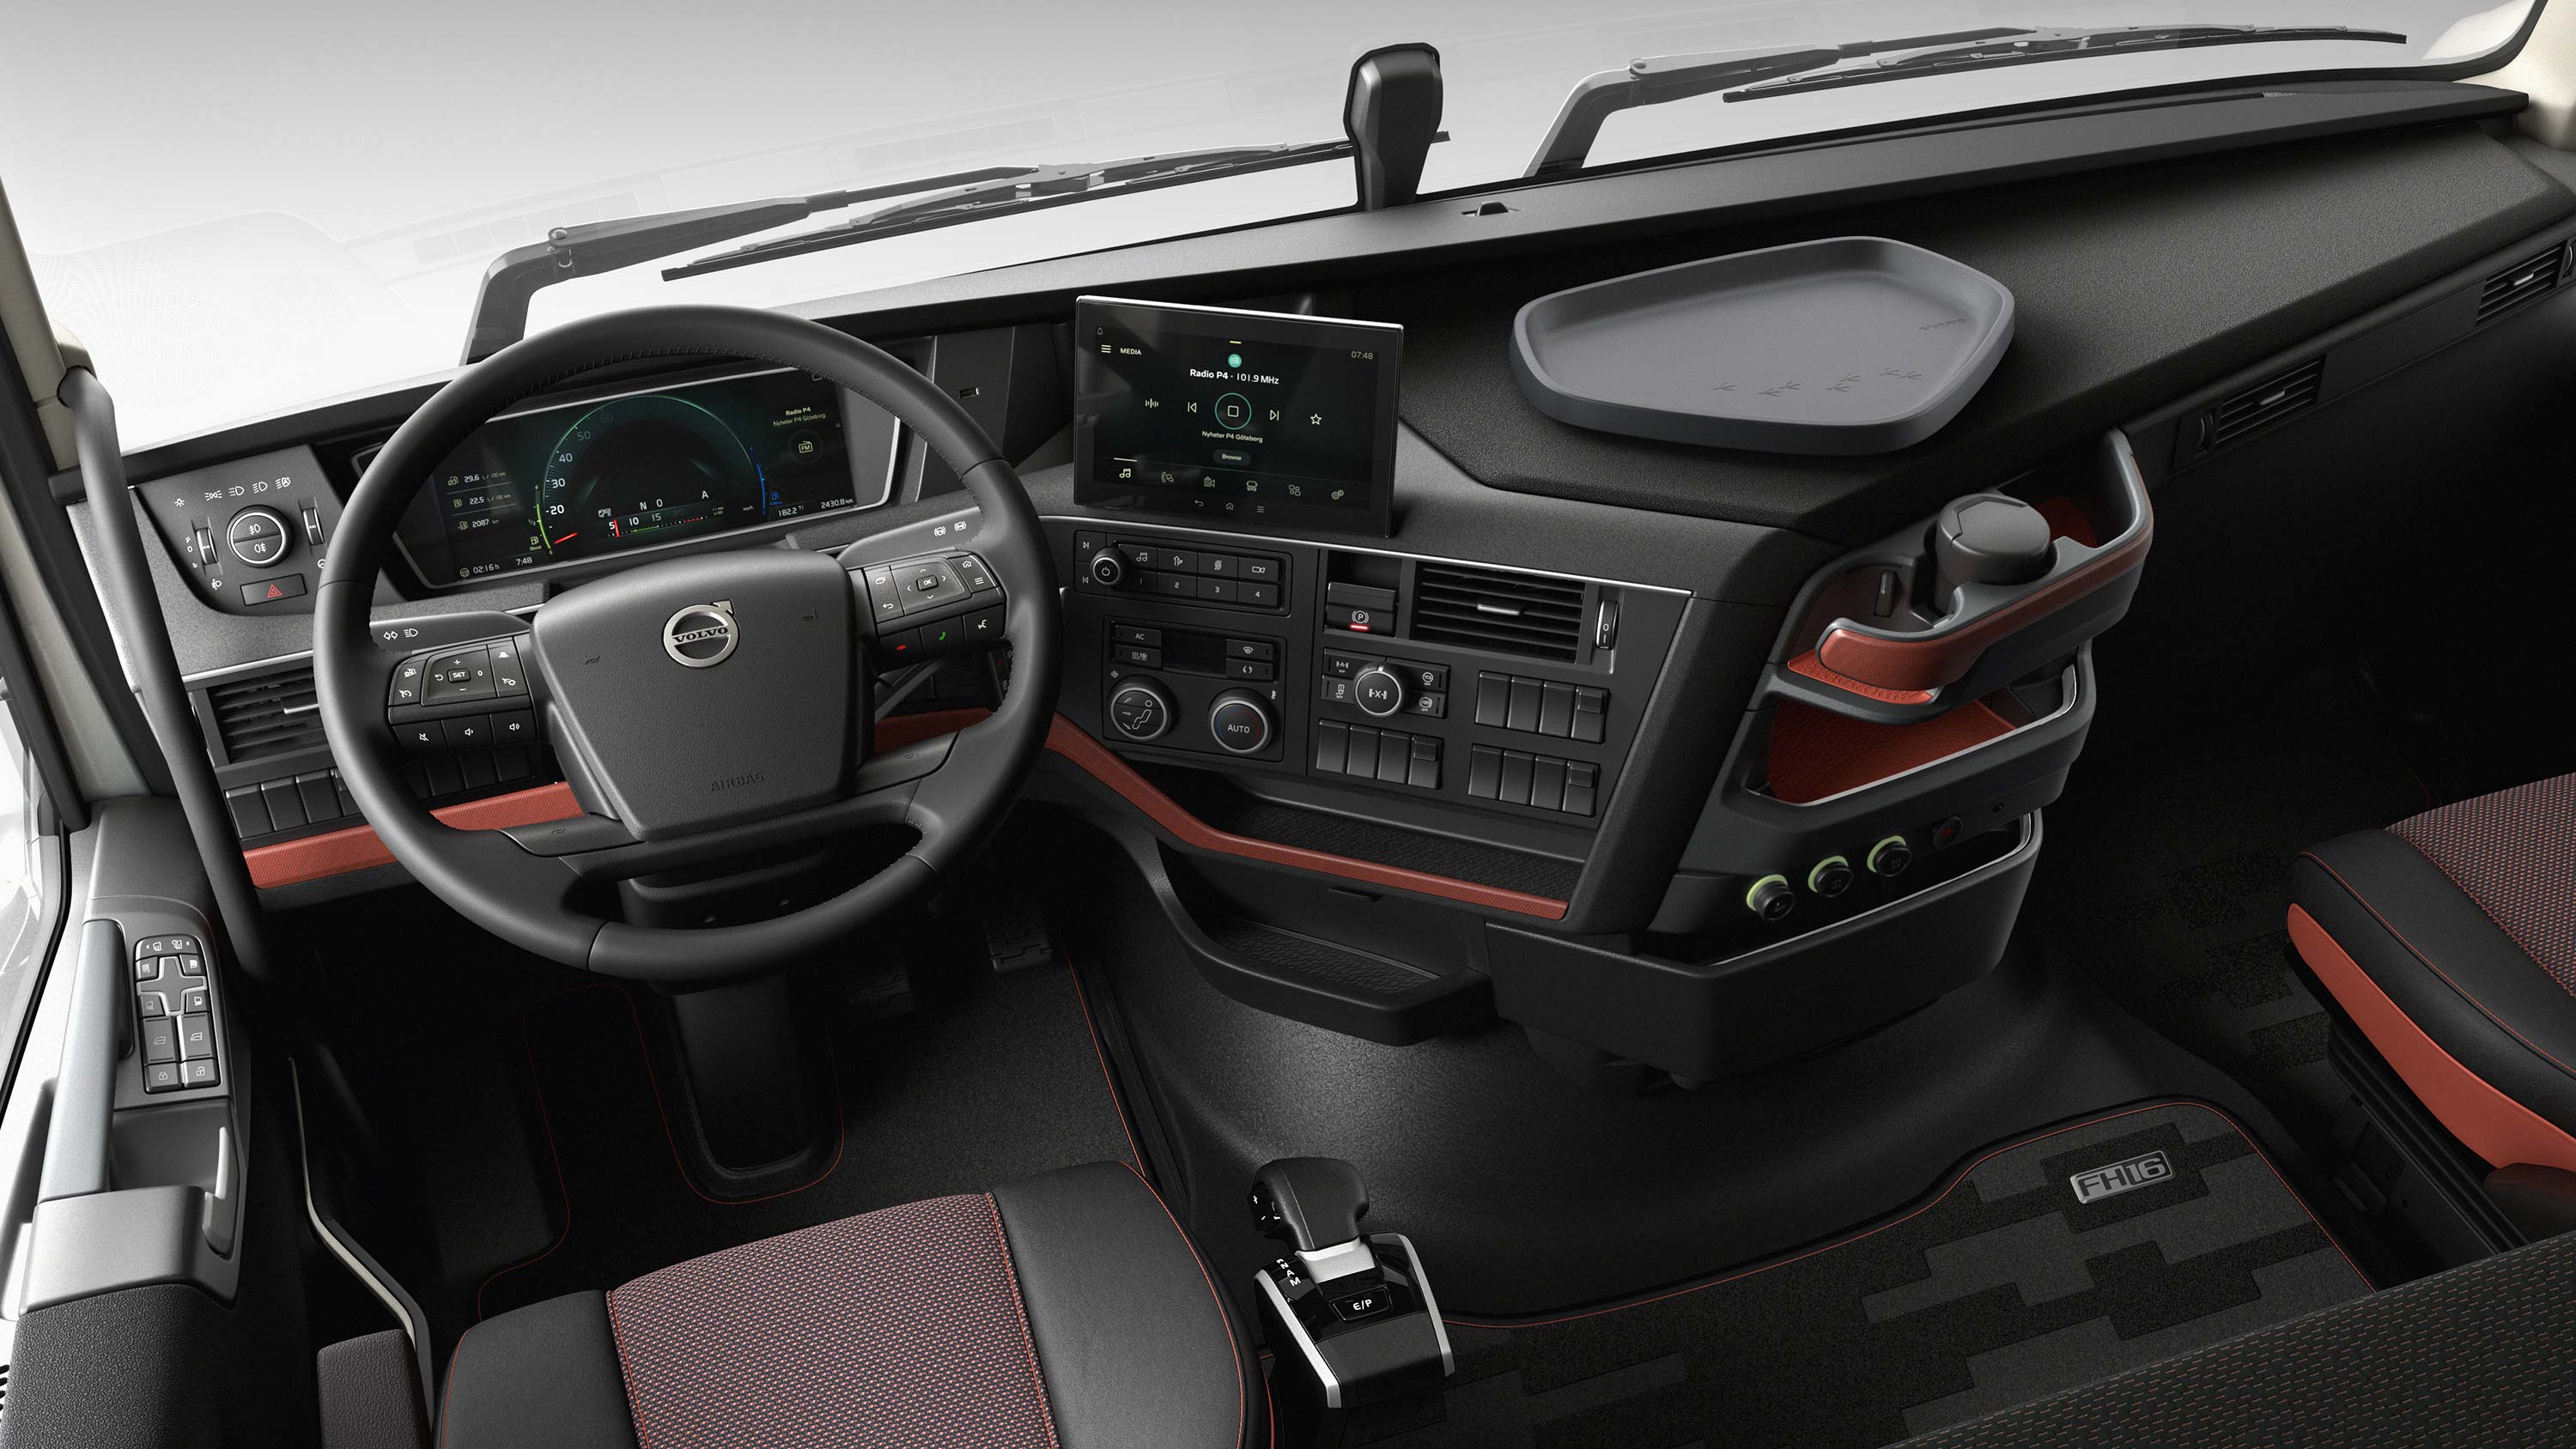 Інтерфейс водія Volvo FH16 дає змогу водієві легко керувати.